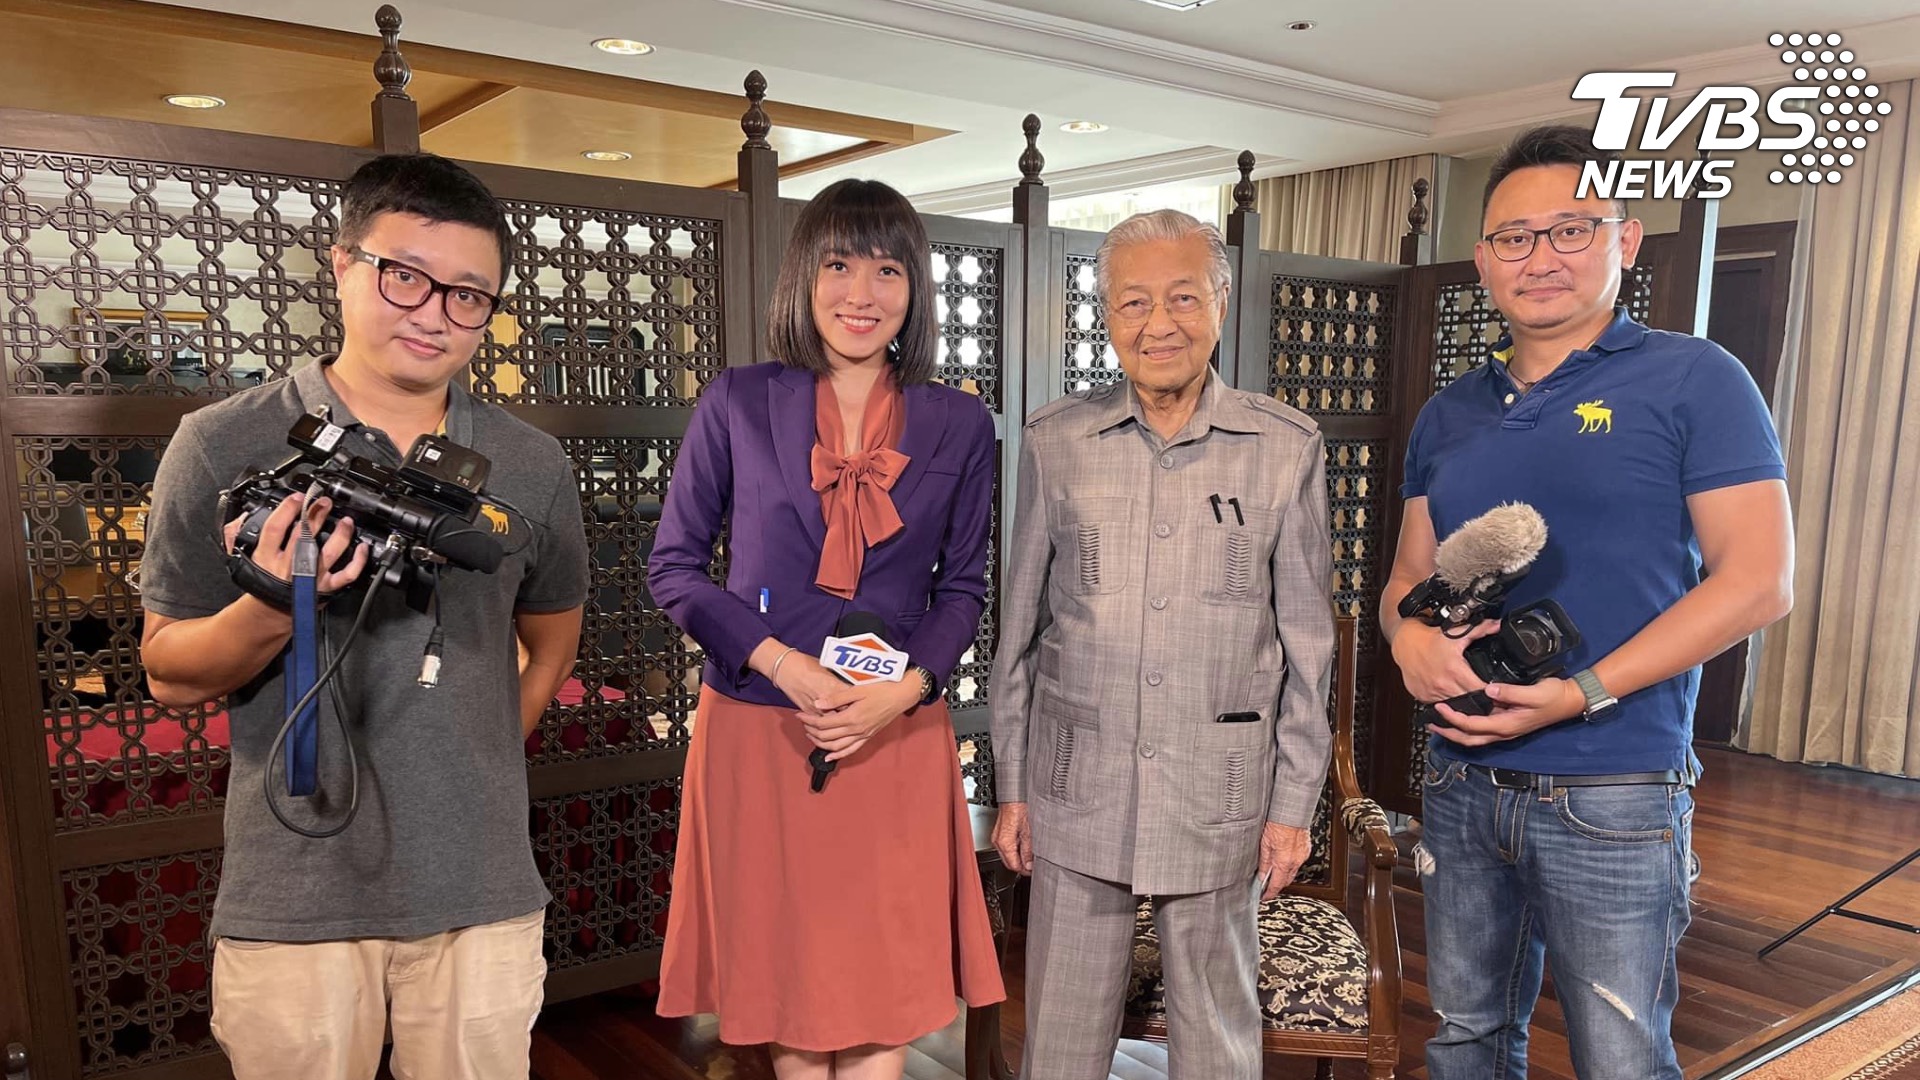 TVBS採訪團隊與馬來西亞前首相馬哈迪(右二)採訪後合照。 TVBS獨家專訪馬、澳前總理馬哈迪、陸克文